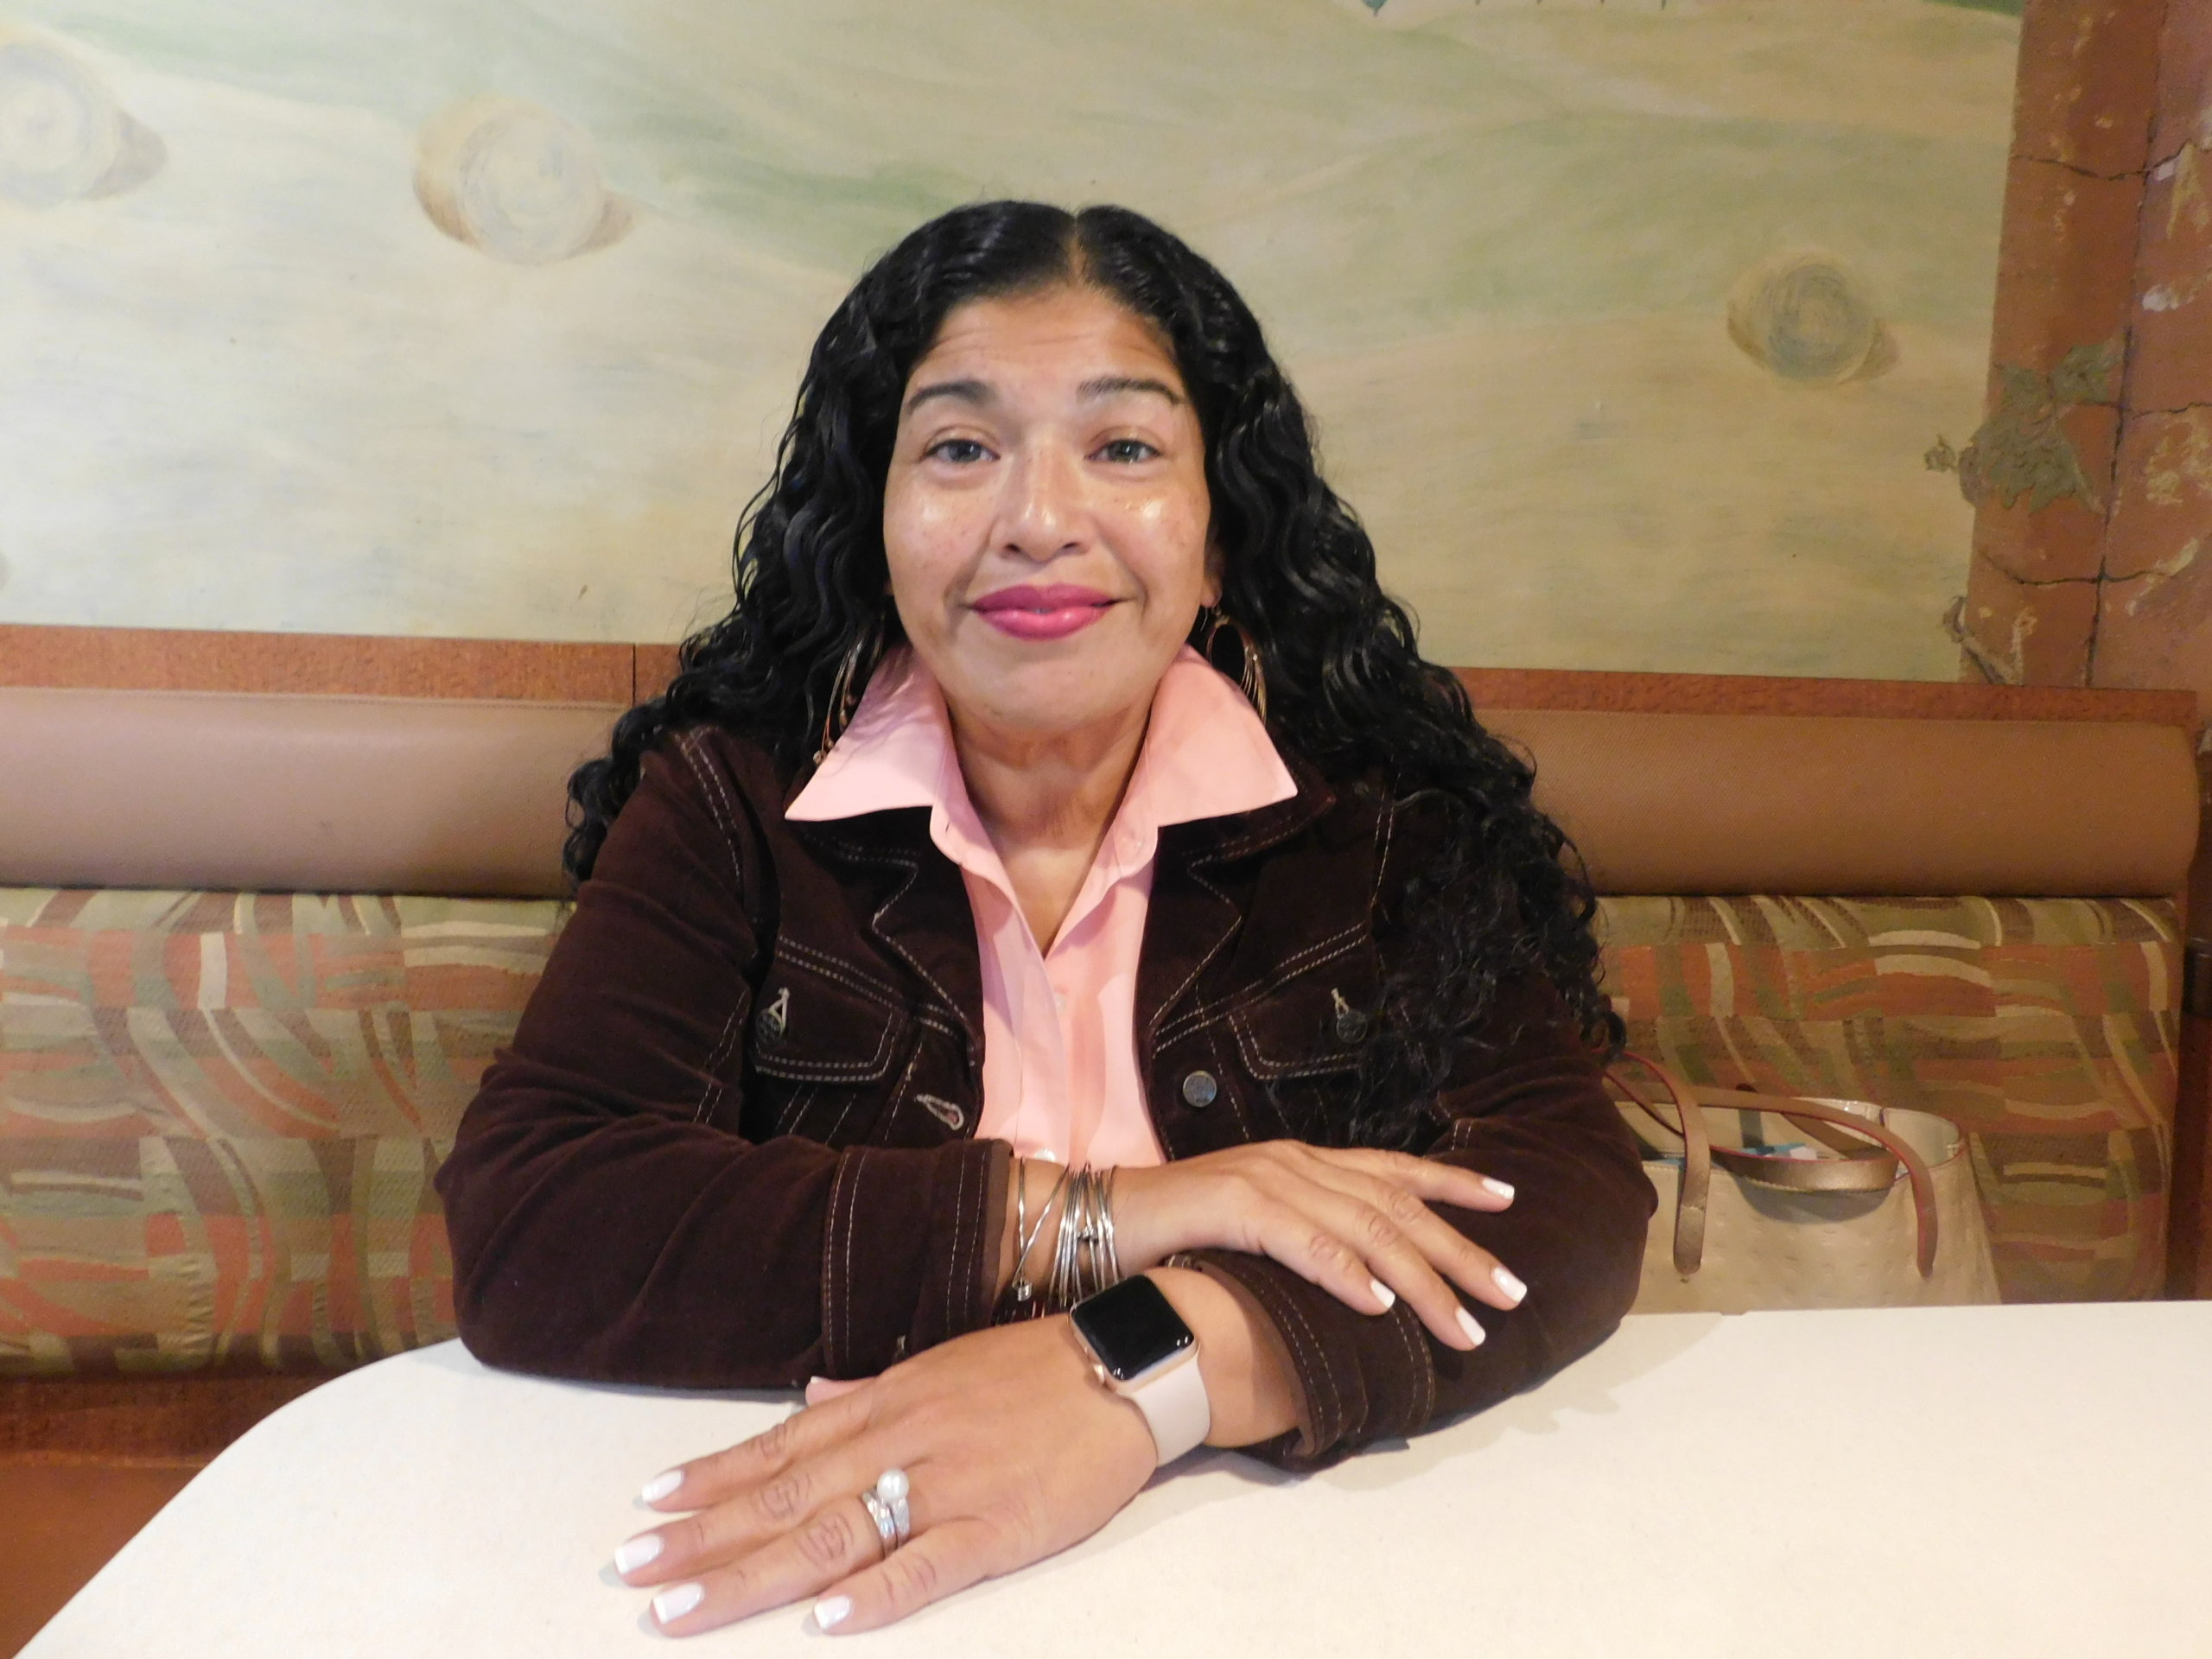 Especial Herencia Hispana: Dra. Cynthia Orellana, educando con el ejemplo